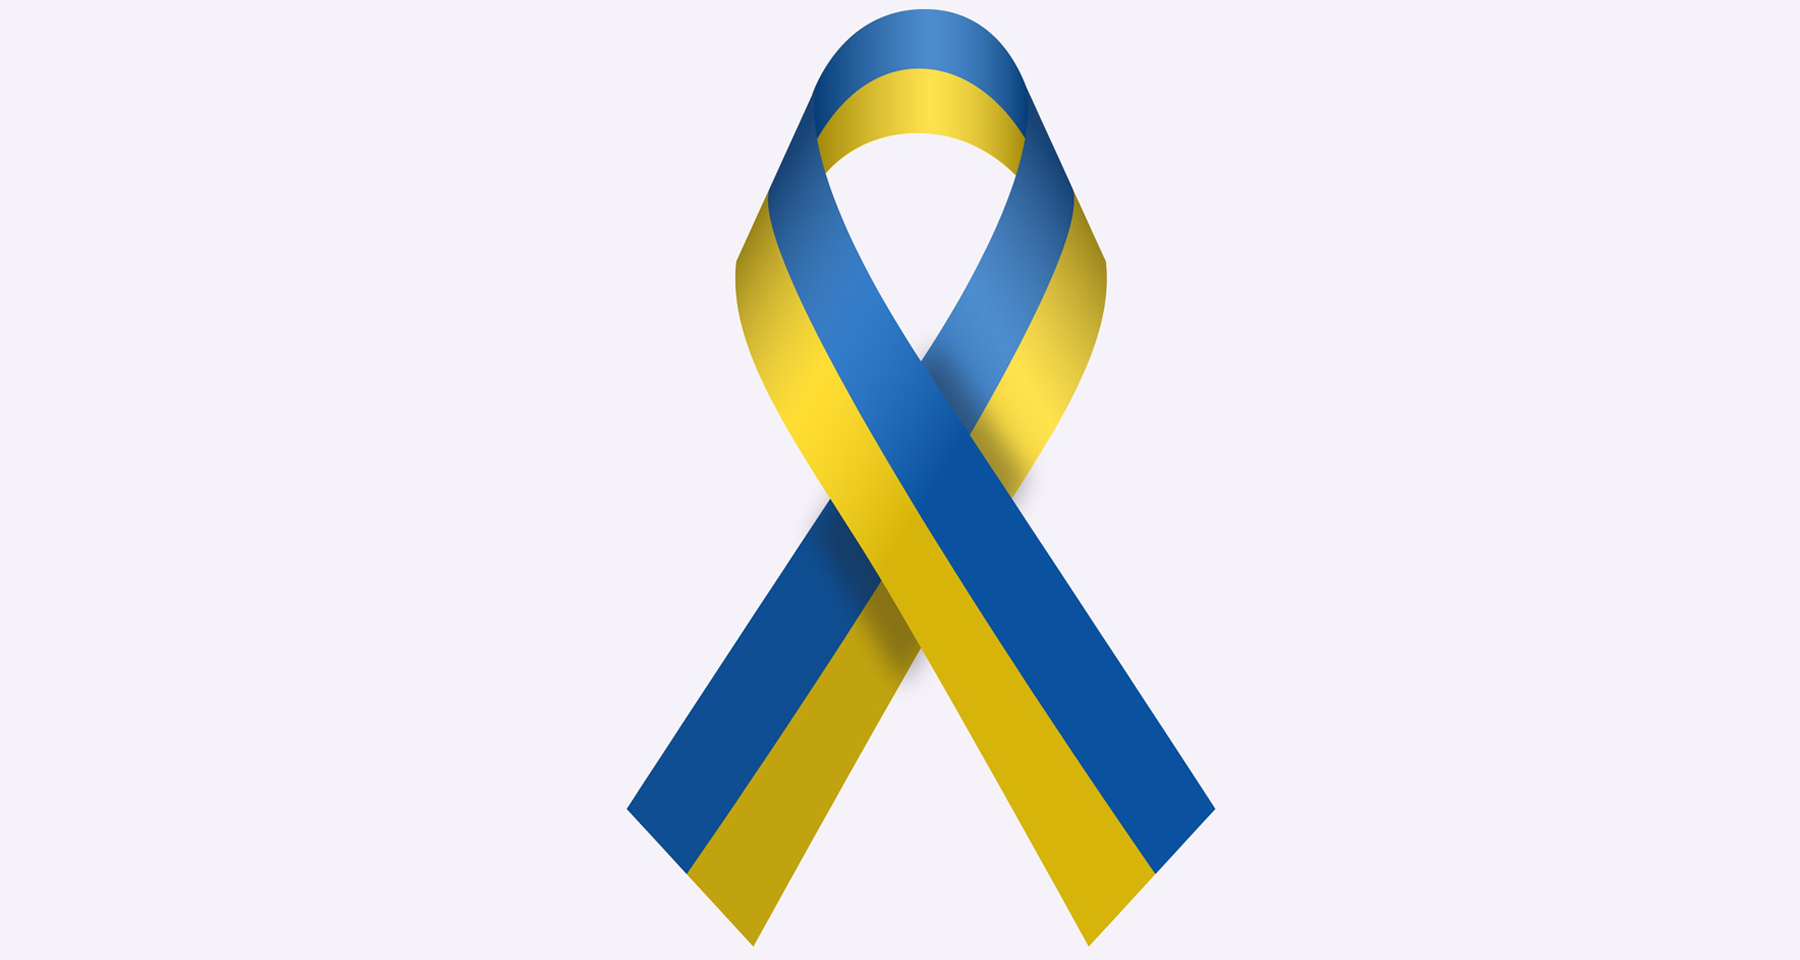 Solidarity for Ukraine